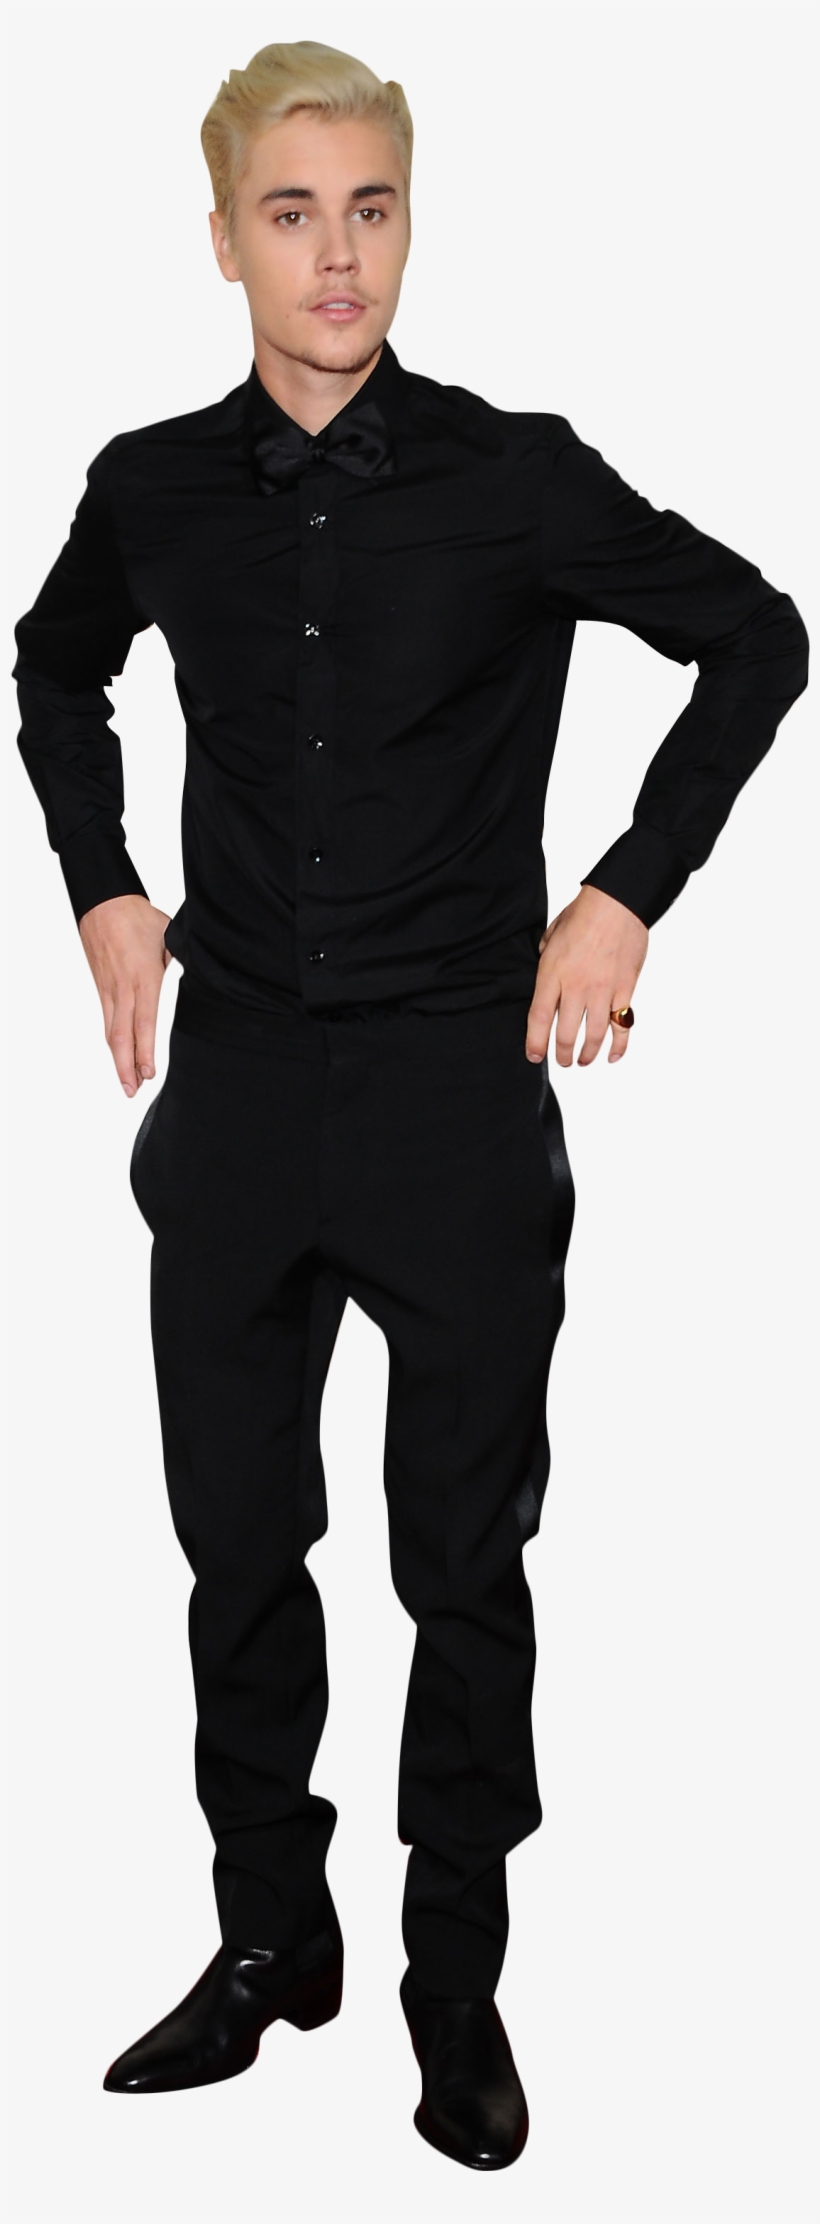 Justin Bieber In Black Png Image - Justin Bieber Suit Png, transparent png #869934